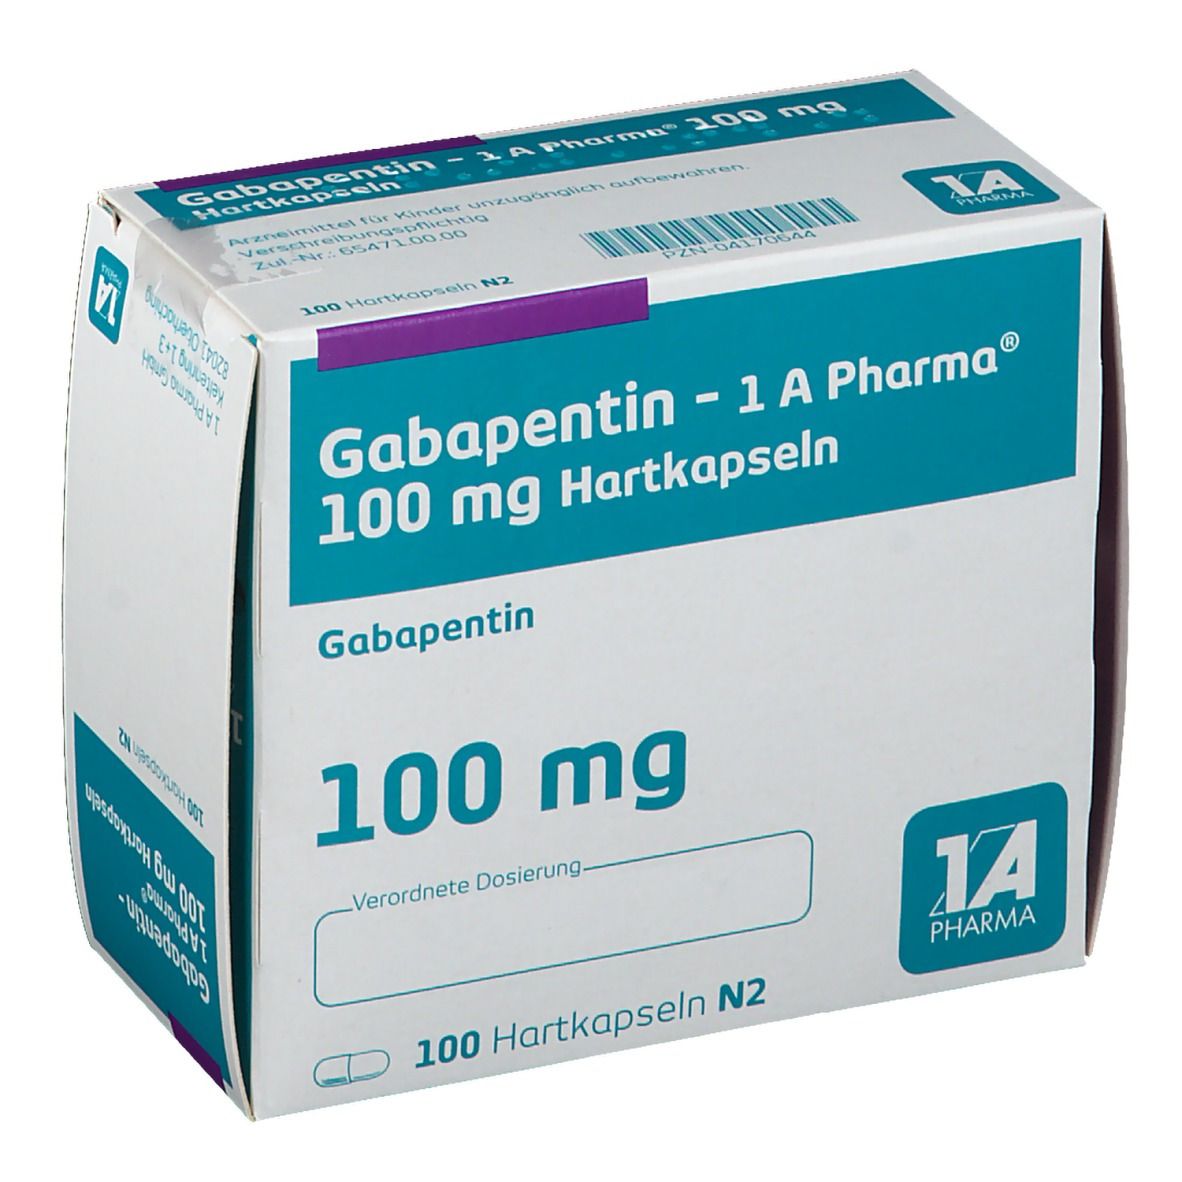 Габантин. Габапентин 100 мг. Капсулы габапентин 100 мг. Габапентин 600 мг. Габапентин канон 600мг.